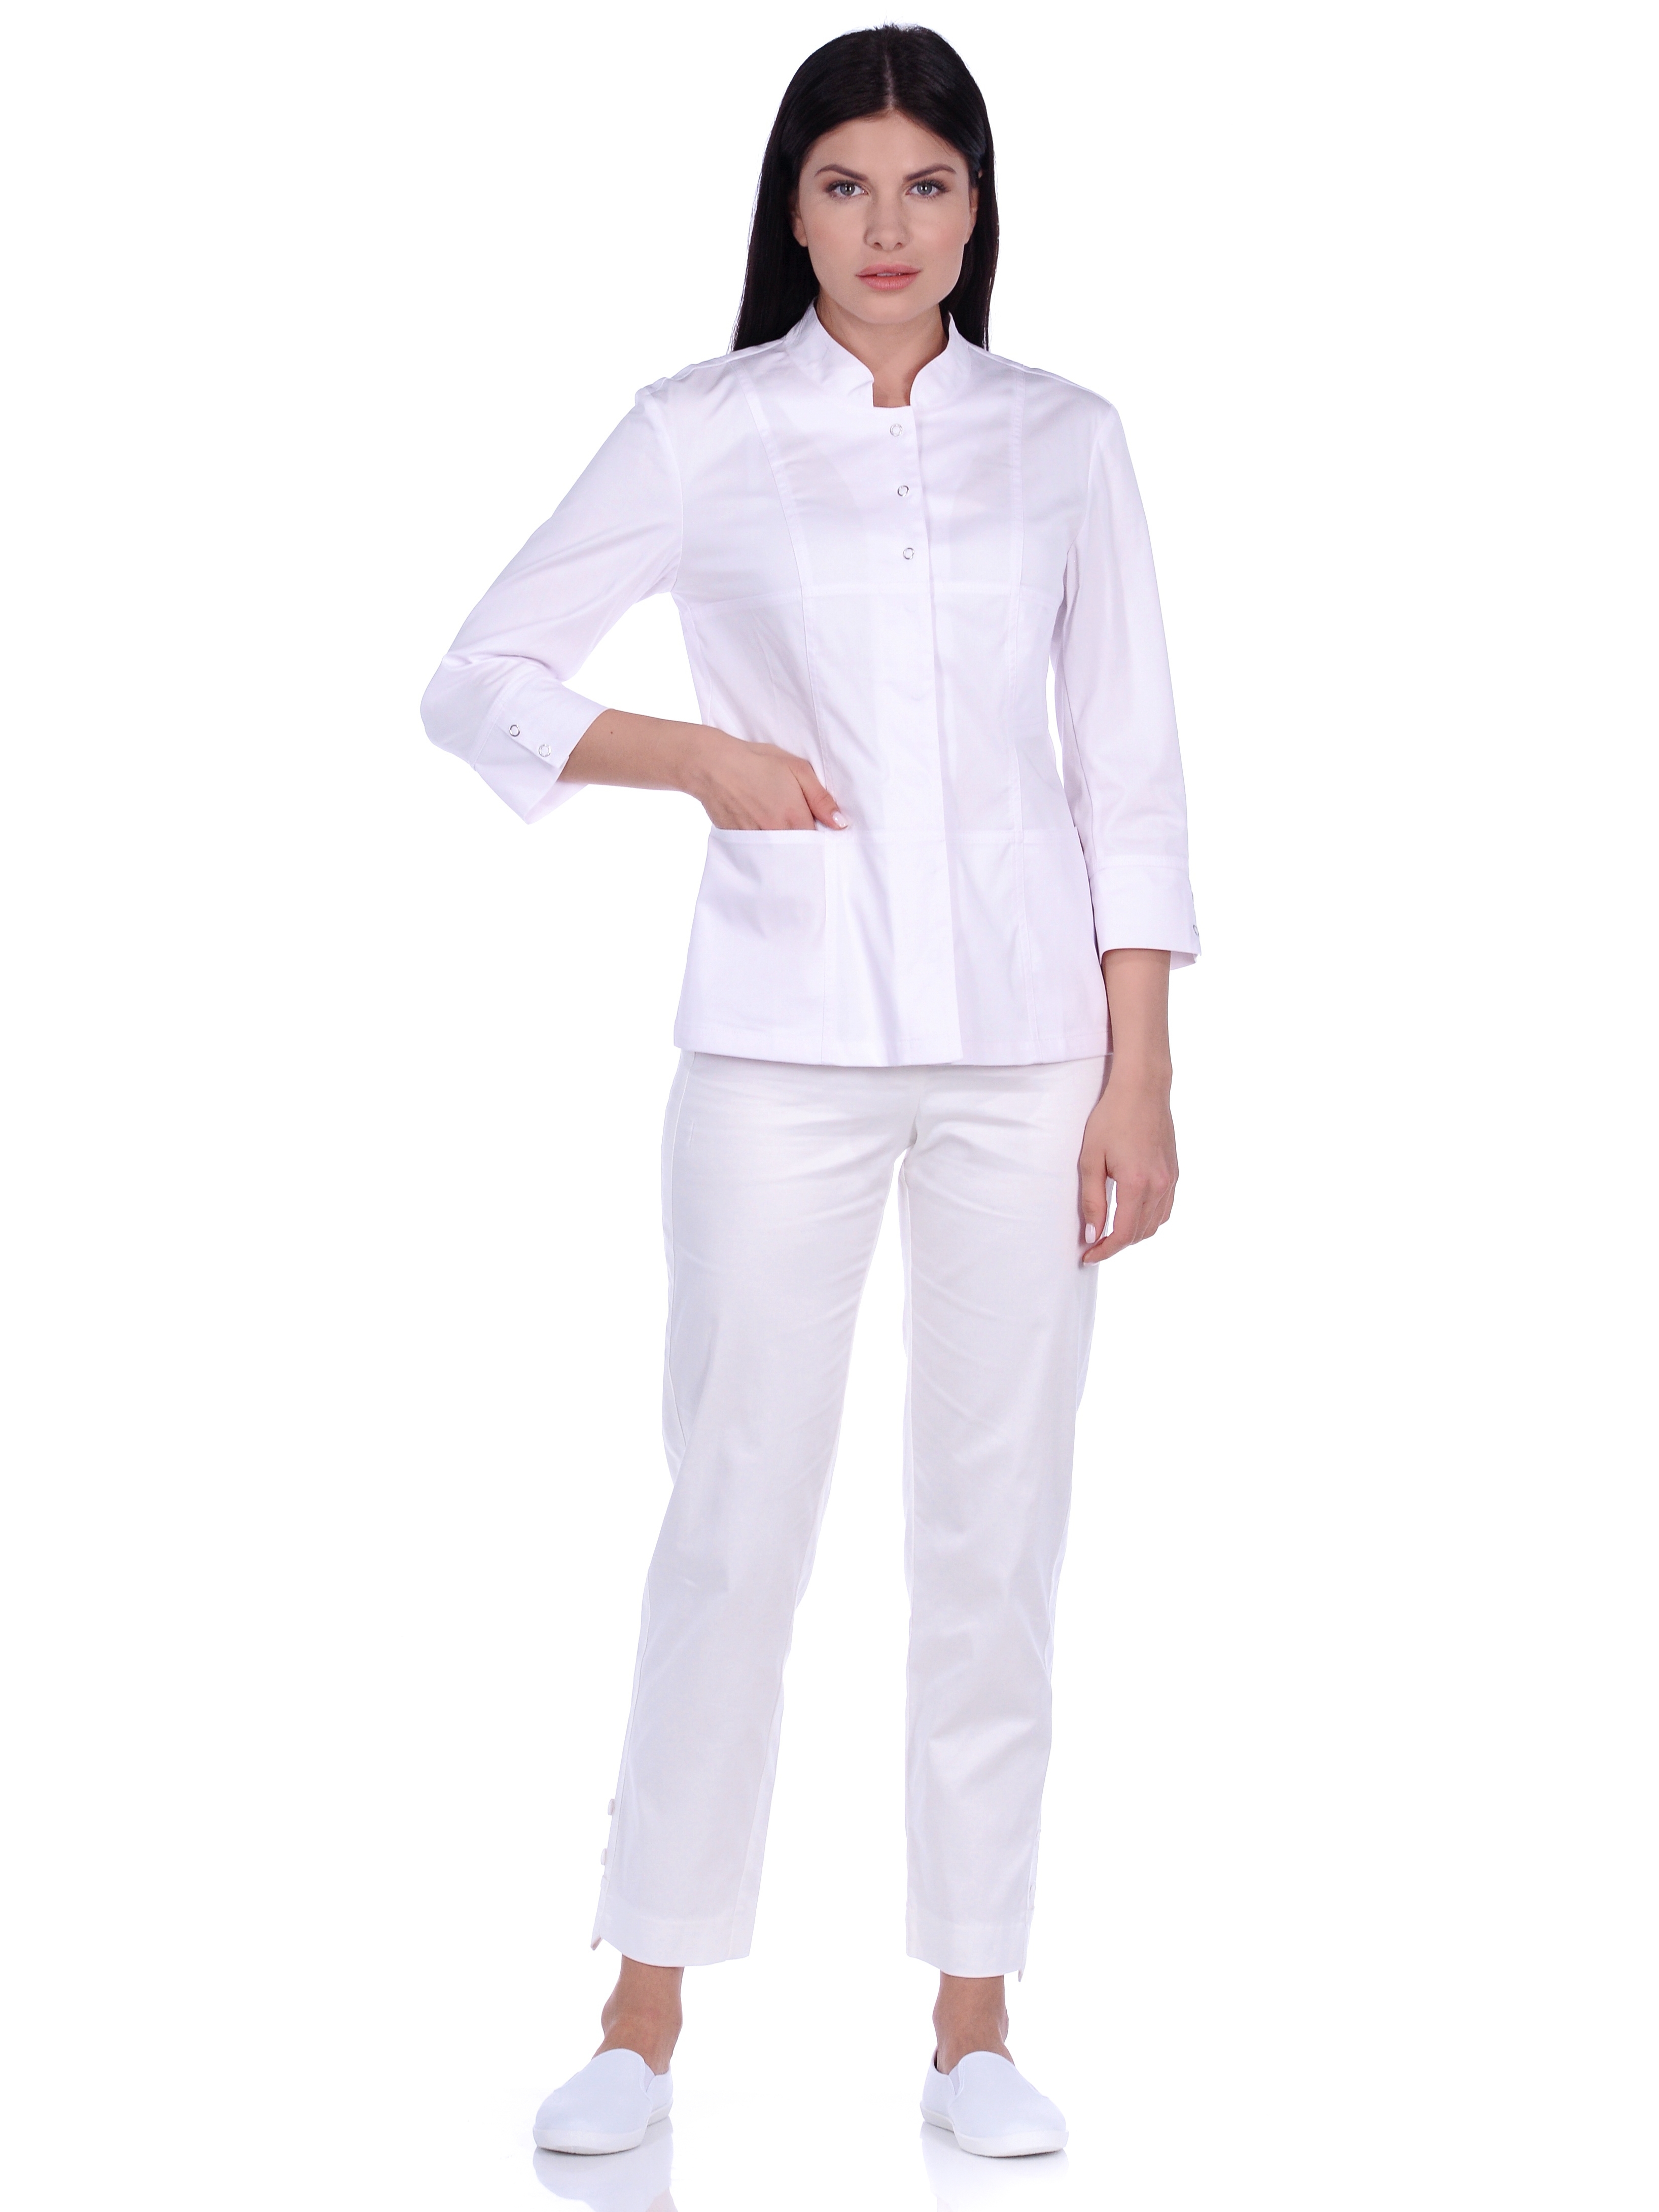 Рубашка медицинская женская Med Fashion Lab 03-735-09-023 белая 44-164